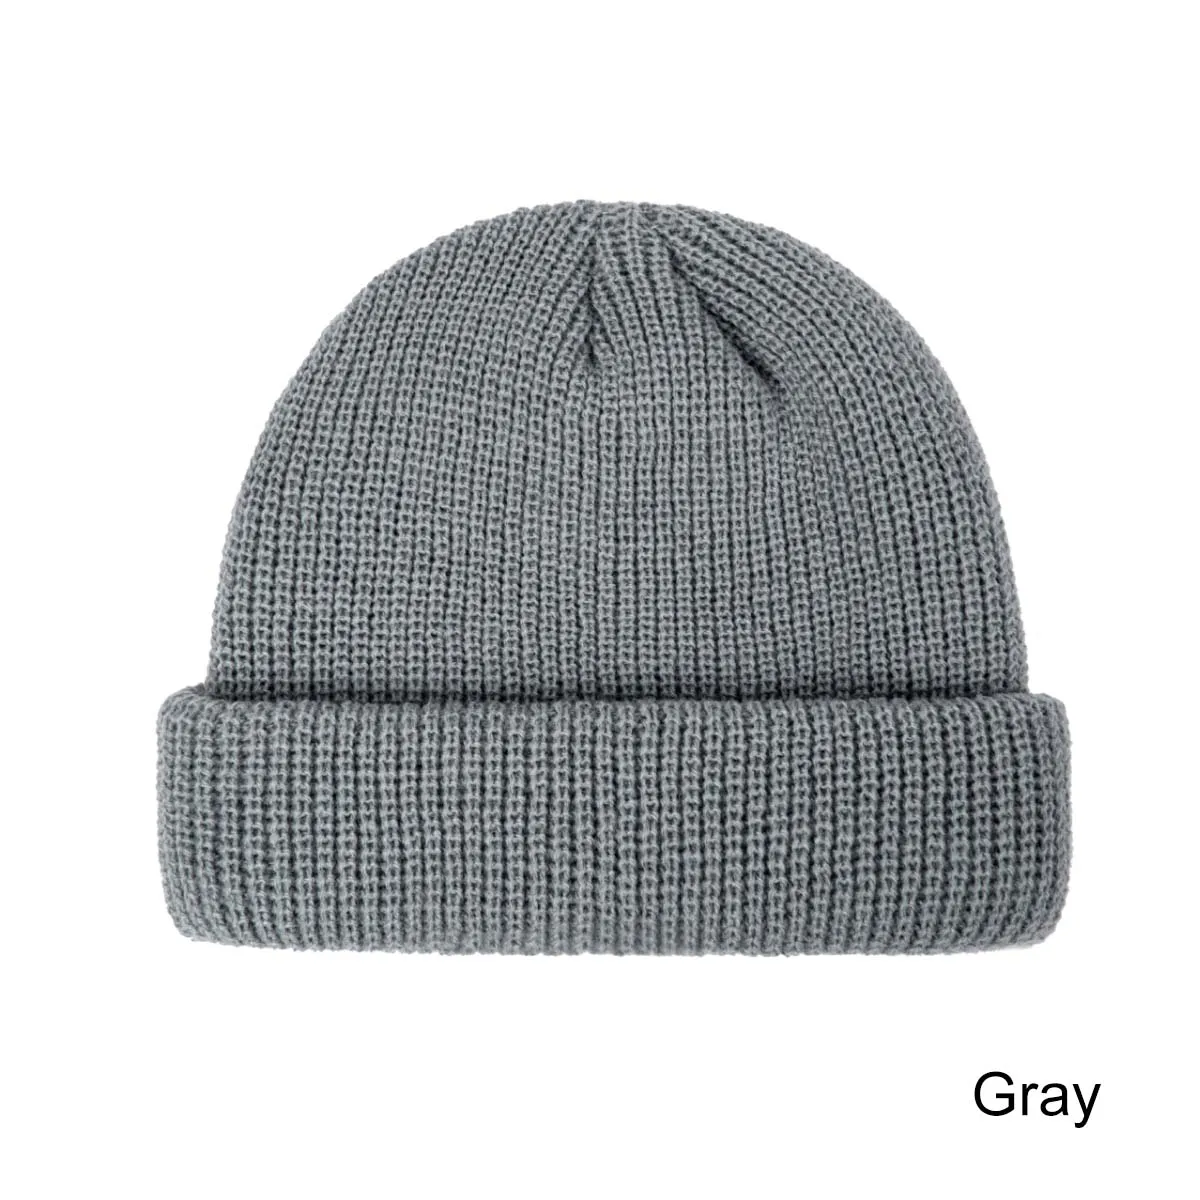 DMROLES Новая мода родитель-детский головной убор вязаная зимняя детская шапка для мальчиков и девочек вязаная теплая шапка для взрослых и детей Универсальная - Цвет: grey